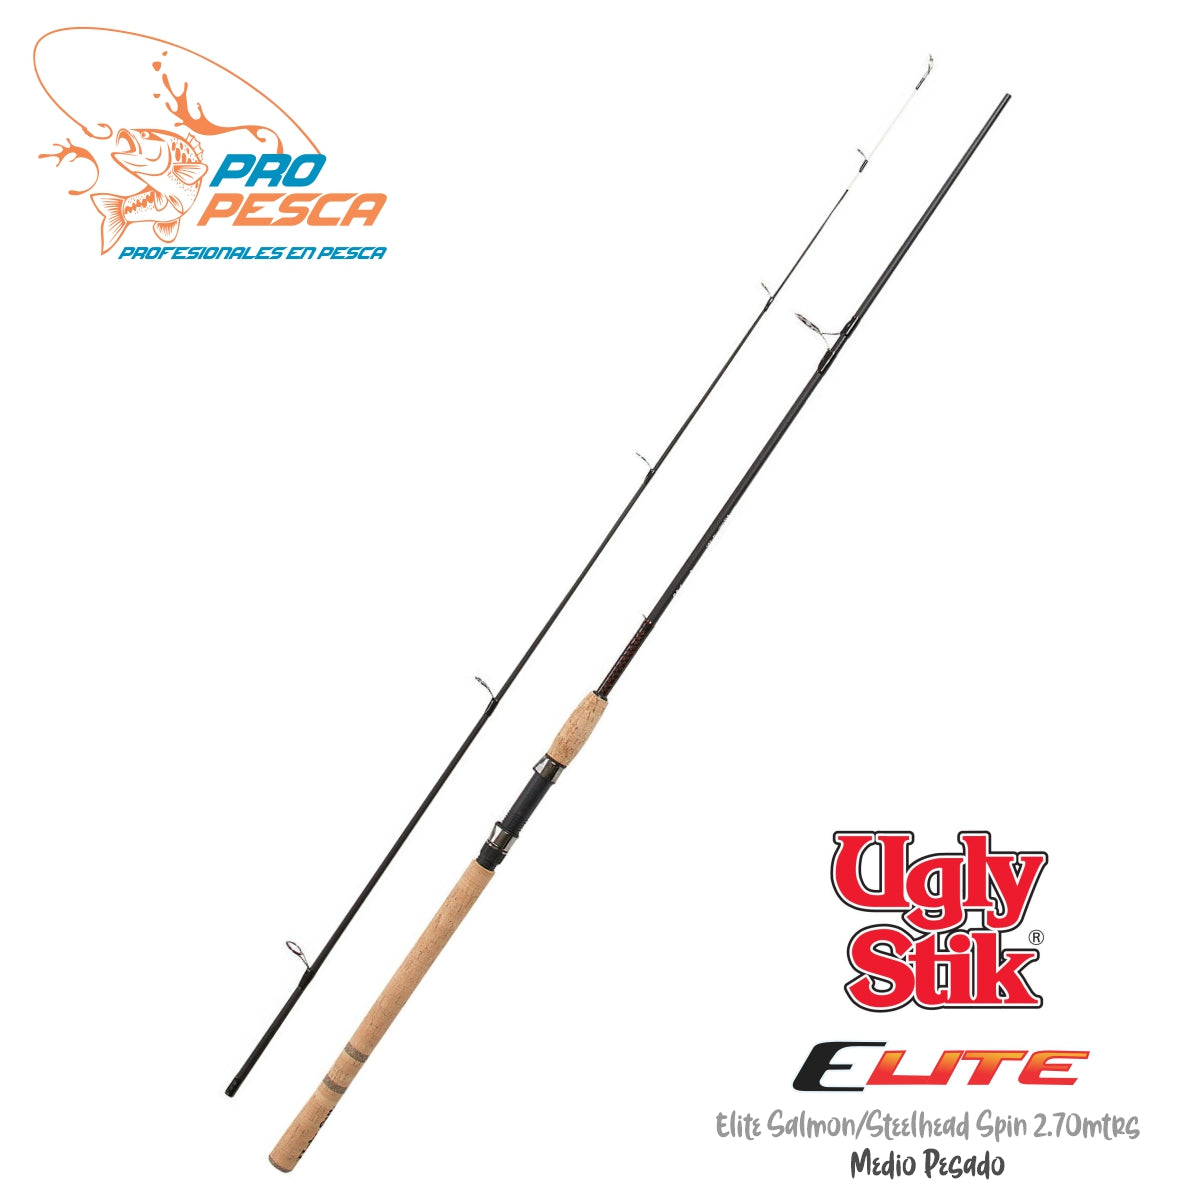 Ugly Stik® ELITE SALMON/STEELHEAD SPIN 2.70 mtrs, MEDIO PESADA - EXTRA –  Pro Pesca